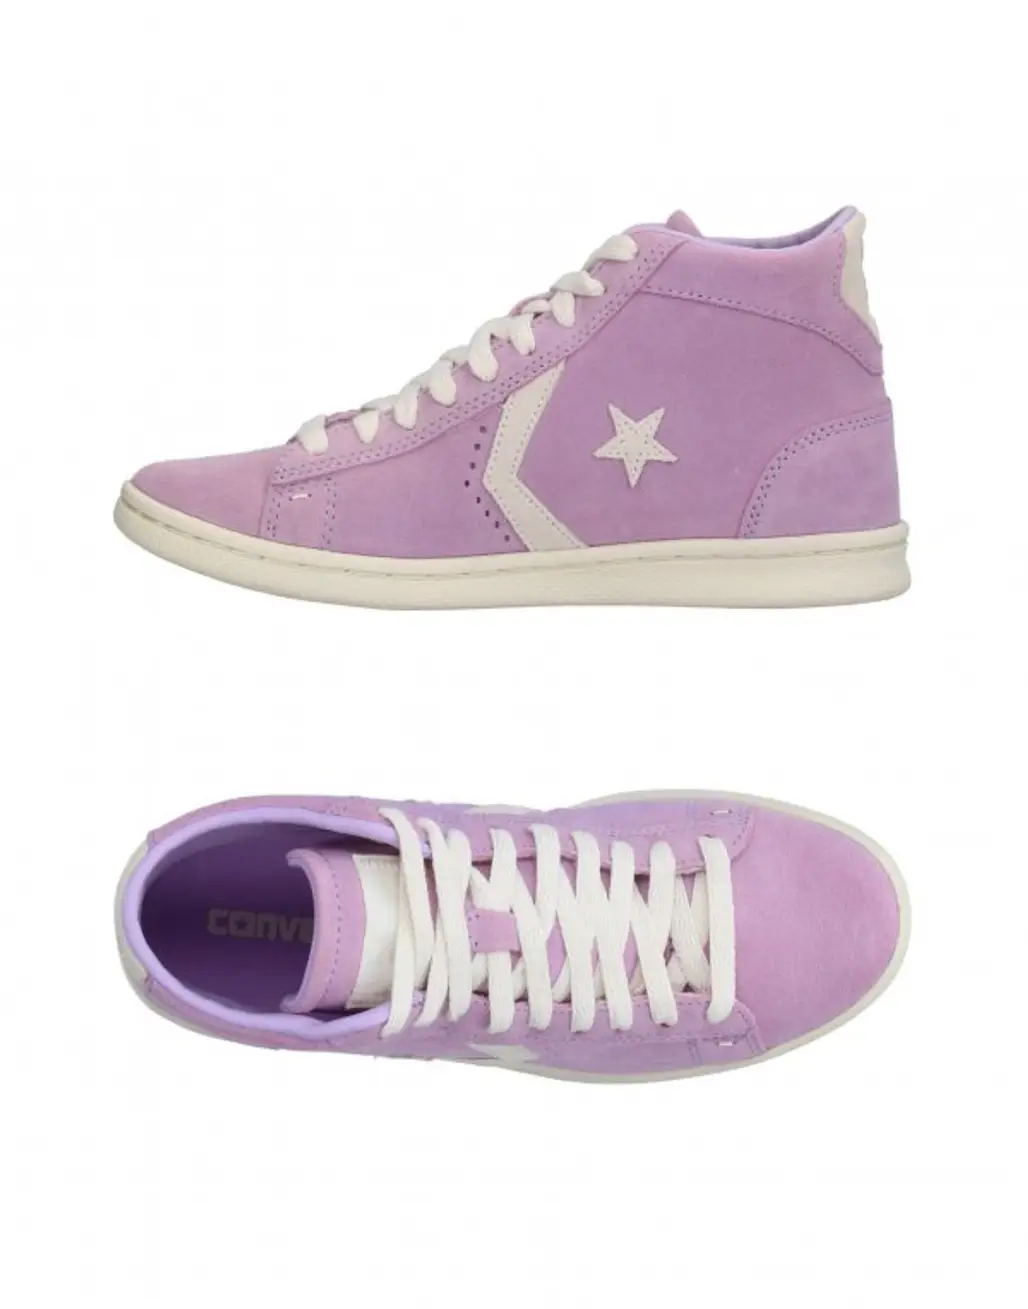 footwear, shoe, pink, violet, purple,